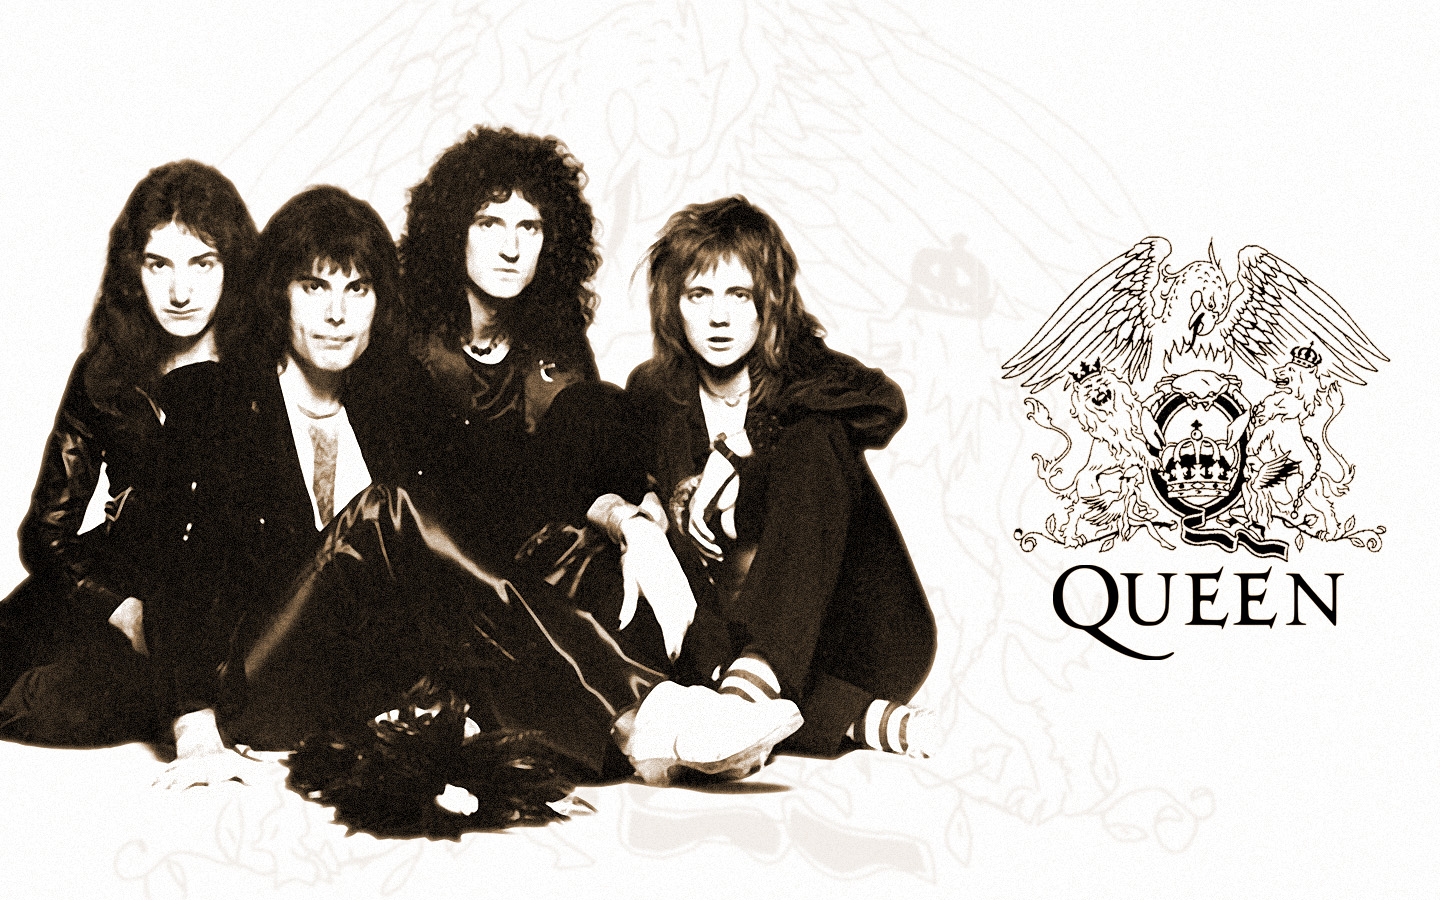 Queen Band Logo